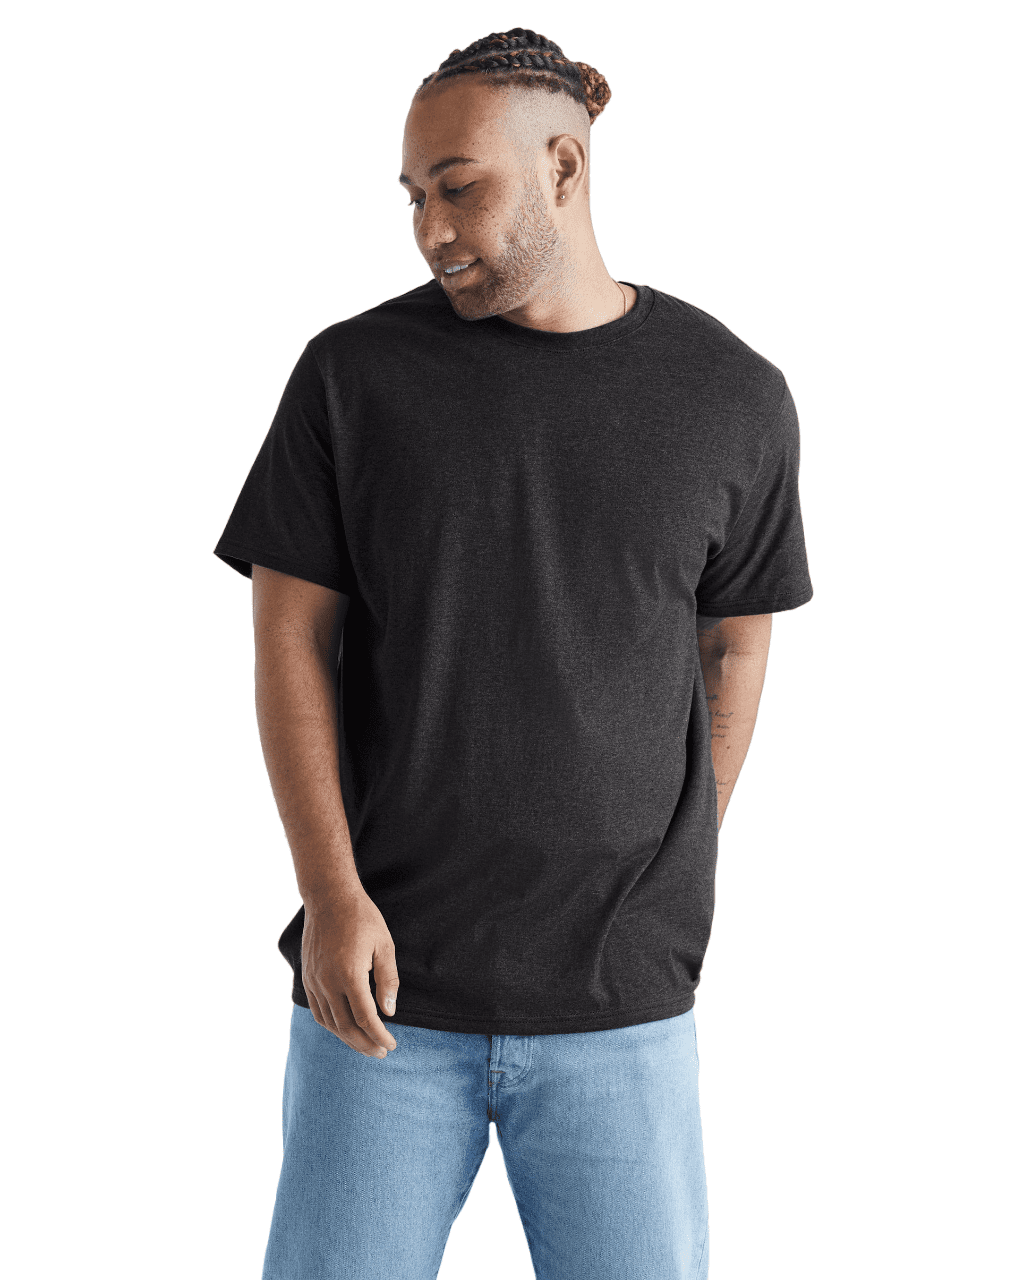 Hanes Originals Mens Big and Tall Cotton T-Shirt